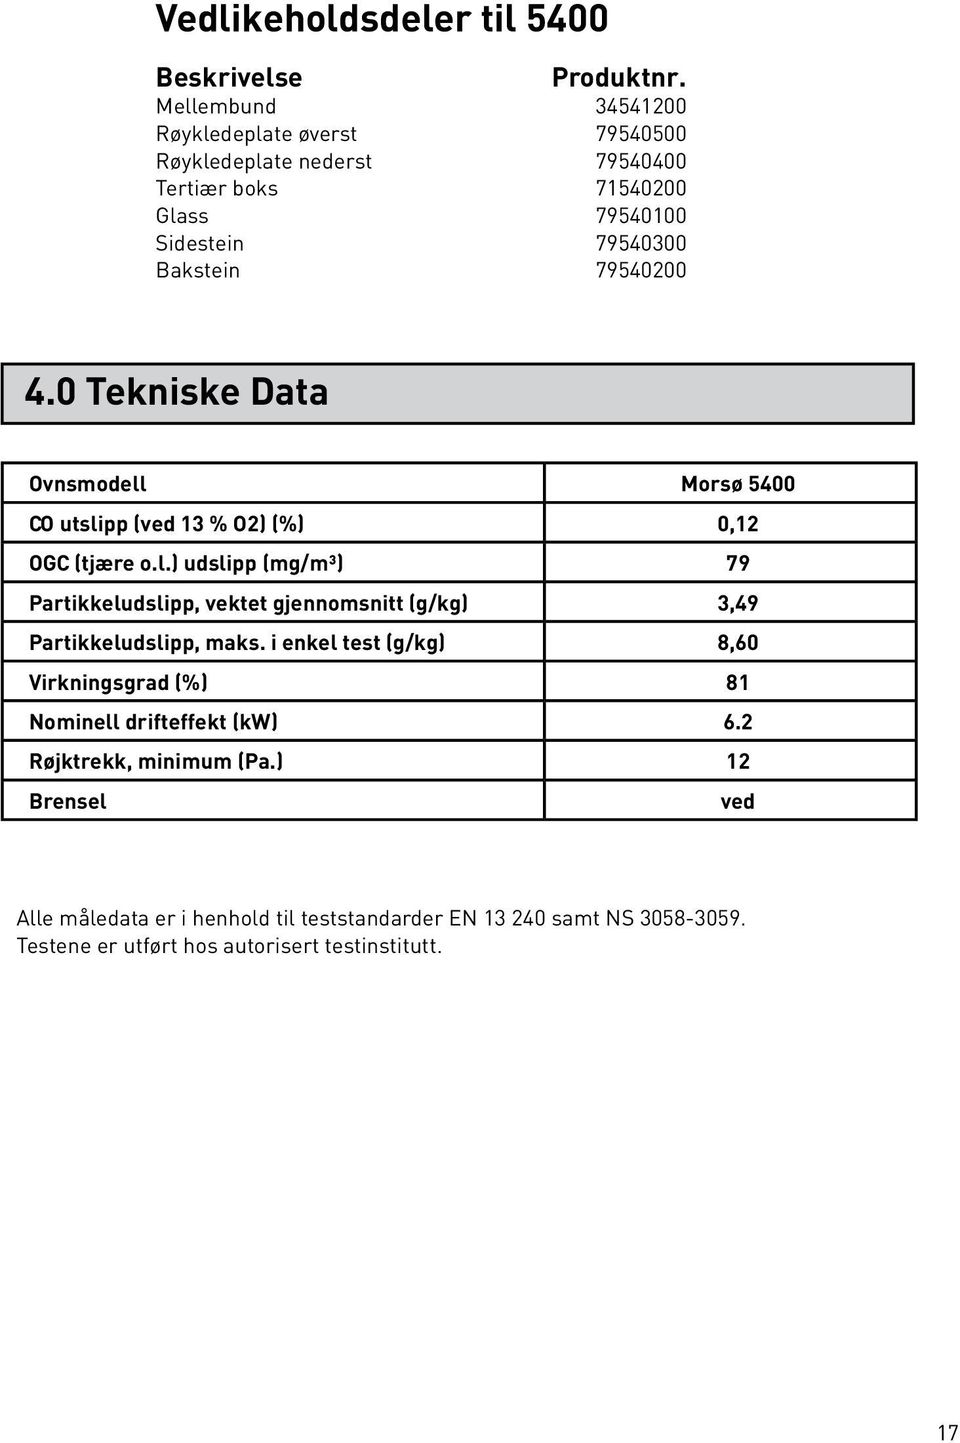 0 Tekniske Data Ovnsmodell Morsø 5400 CO utslipp (ved 13 % O2) (%) 0,12 OGC (tjære o.l.) udslipp (mg/m³) 79 Partikkeludslipp, vektet gjennomsnitt (g/kg) 3,49 Partikkeludslipp, maks.